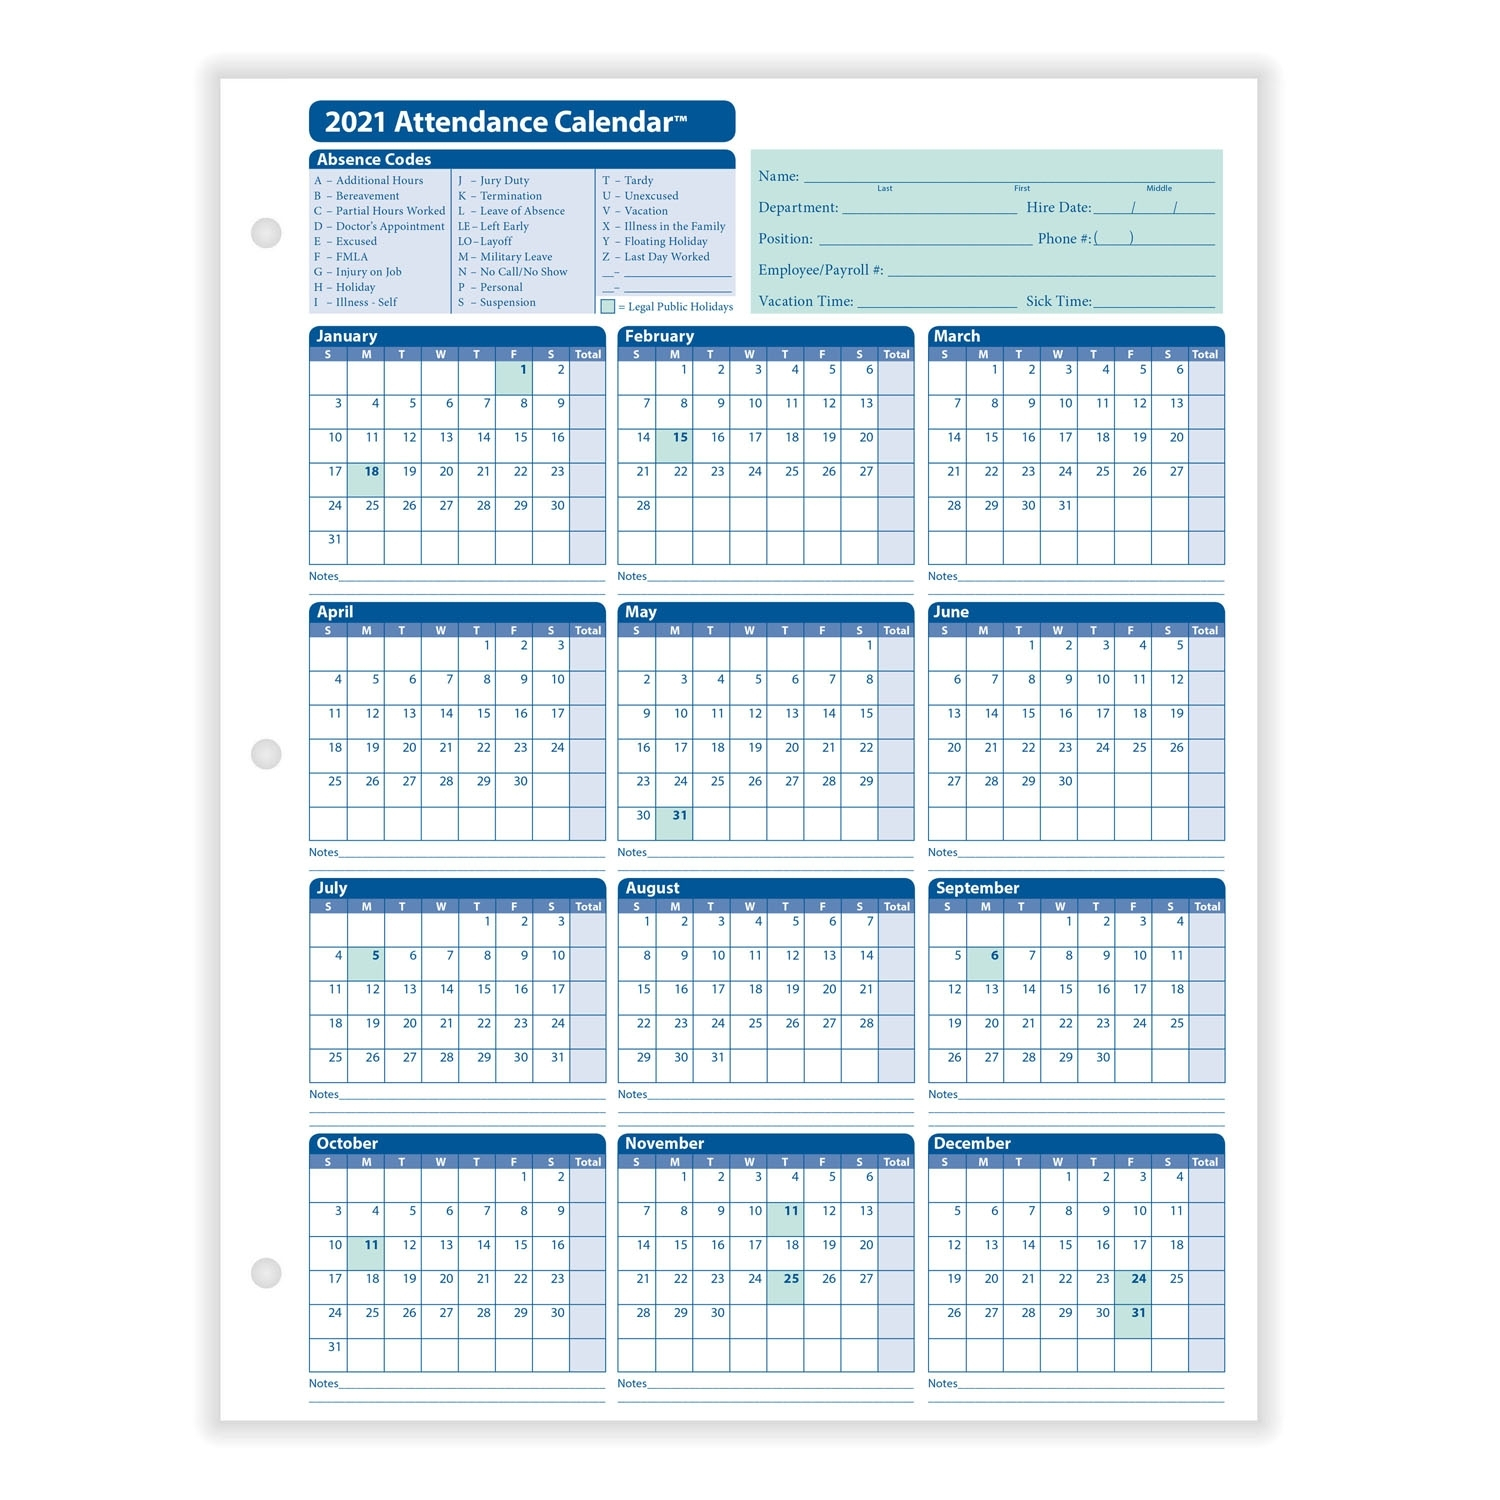 Get 2021 Employee Attendance Calendar | Best Calendar Example